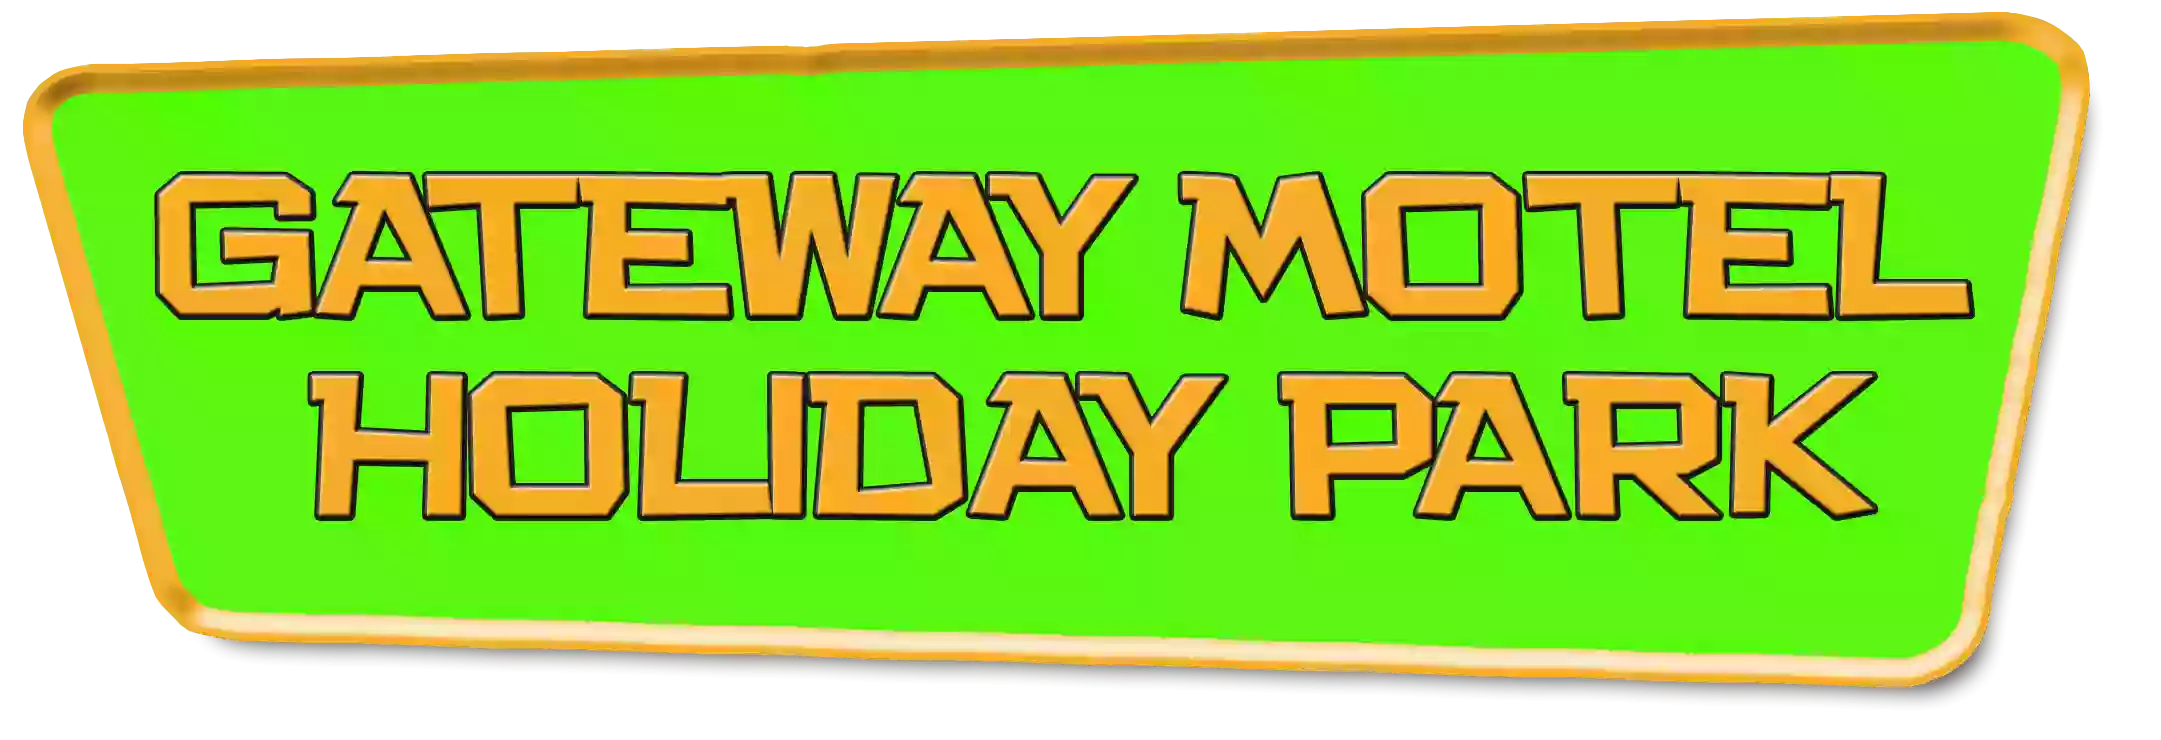 Gateway Motel & Holiday Park